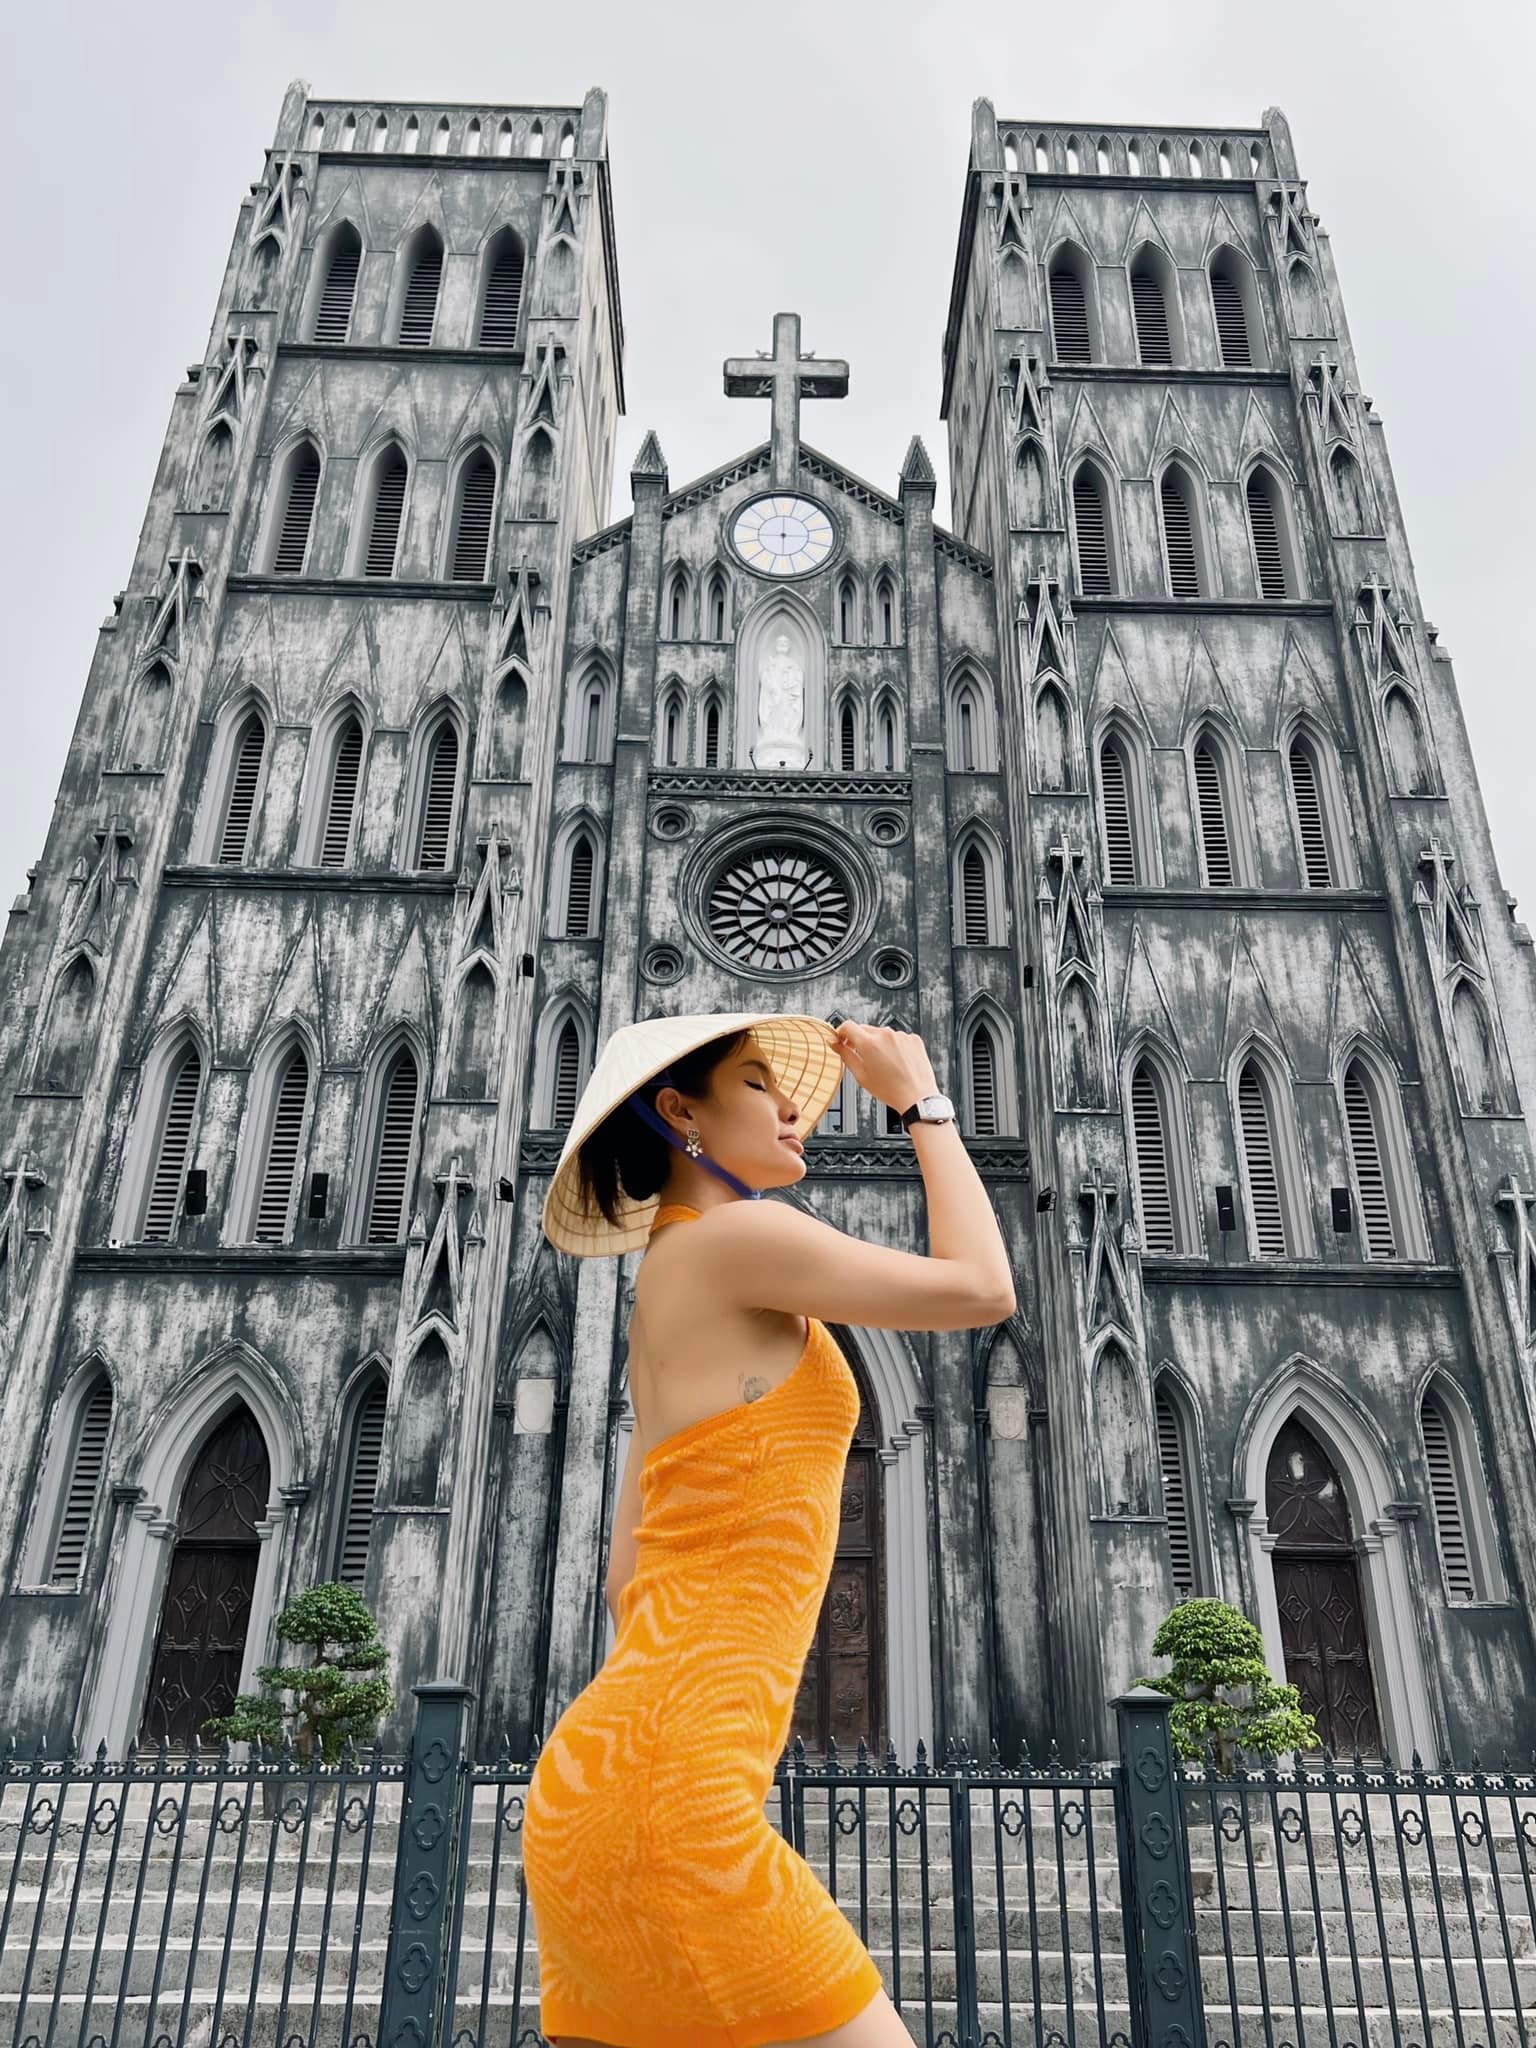 Phương Trinh Jolie bị chỉ trích vì diện trang phục hở bạo chụp ảnh trước nhà thờ